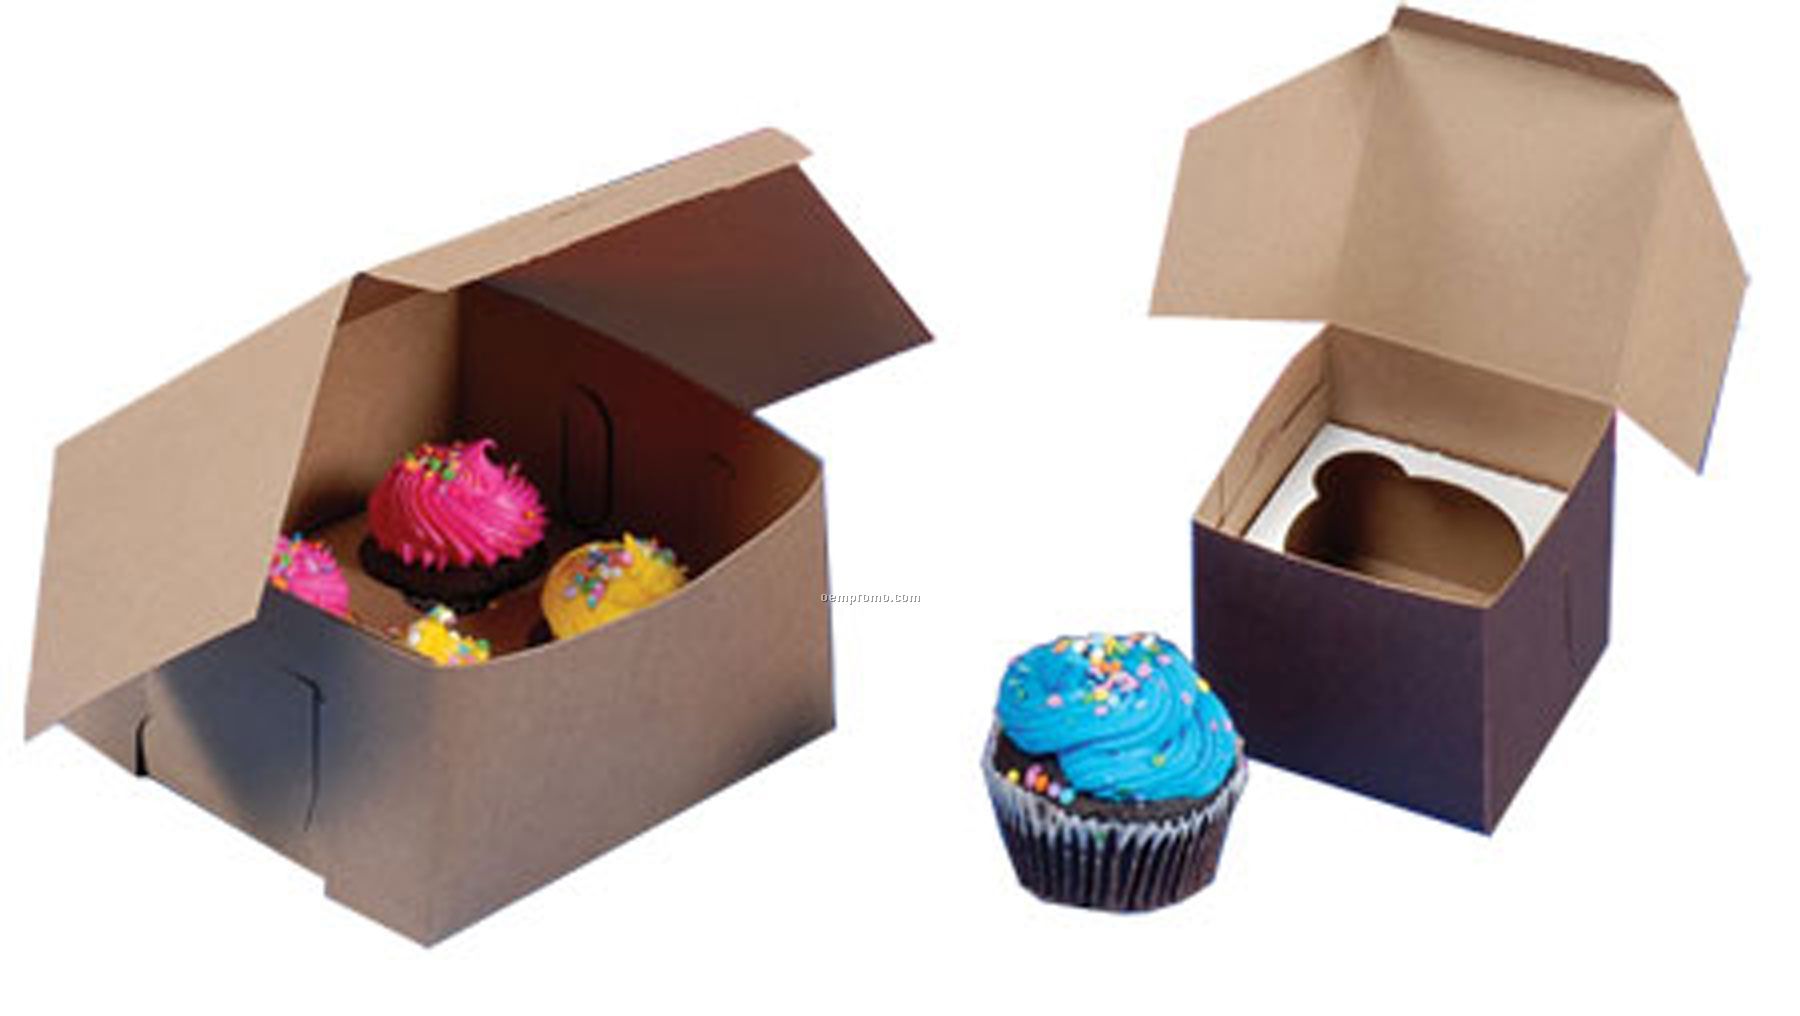 2 Reg/Jumbo Cupcake Boxes (8